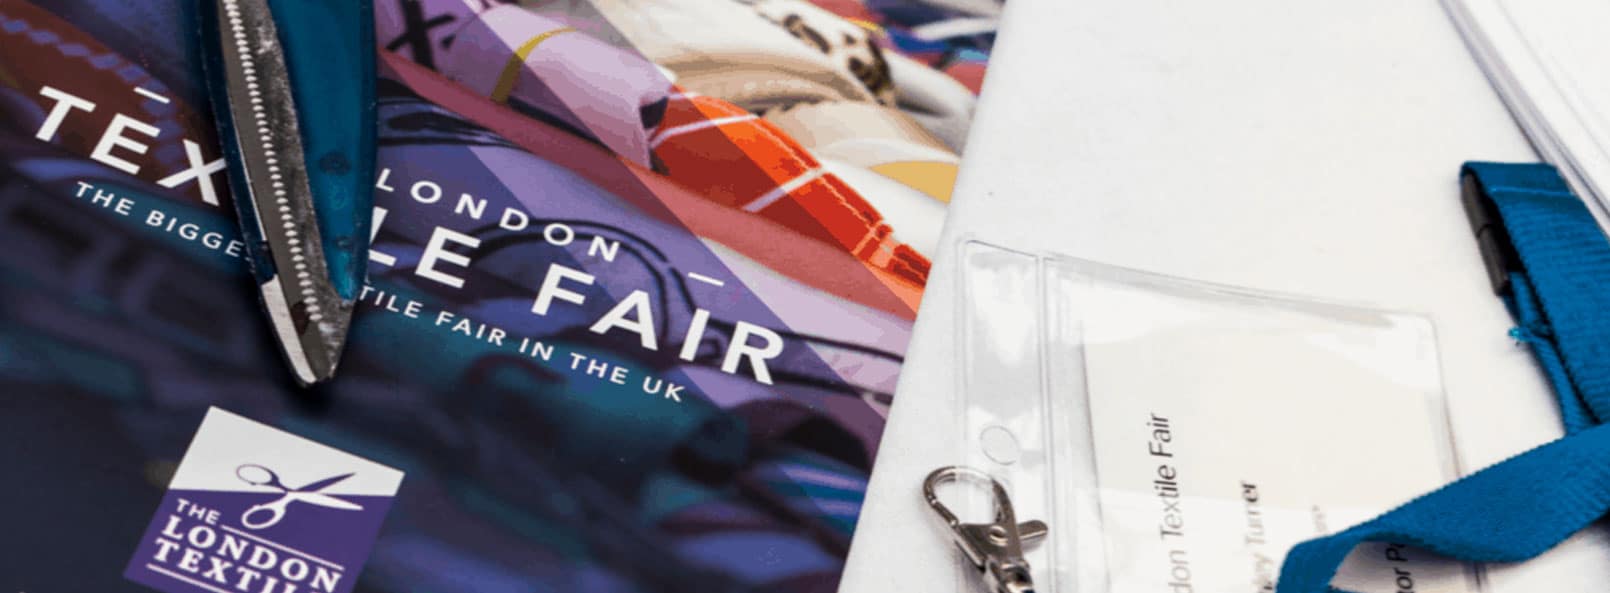 London Textile Fair 2020